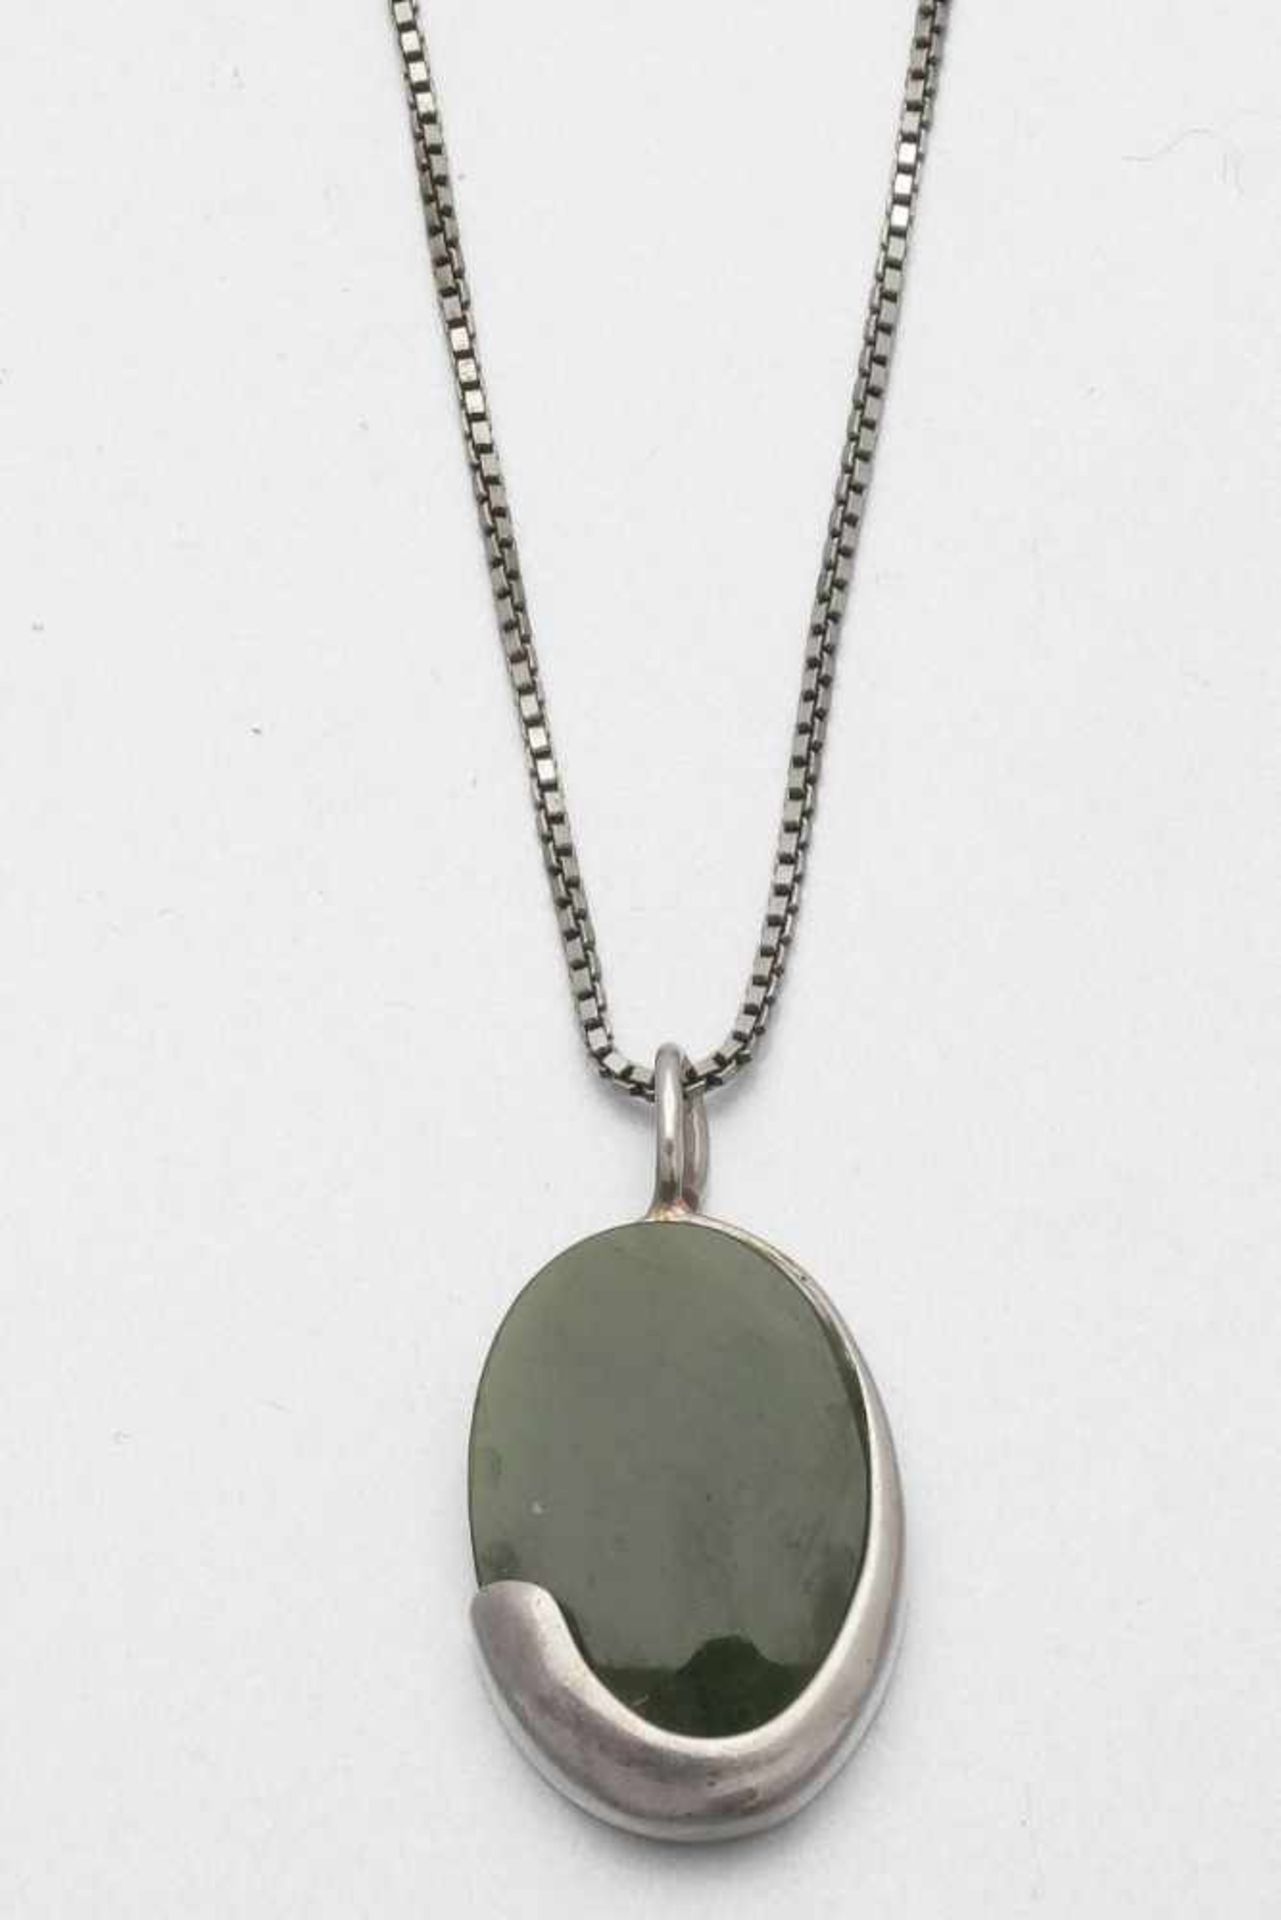 Jade-Schmuckset in Silber: Ring, Anhänger und Armband835er und 925er Silber, gestemp. Div. Jade. - Image 2 of 3